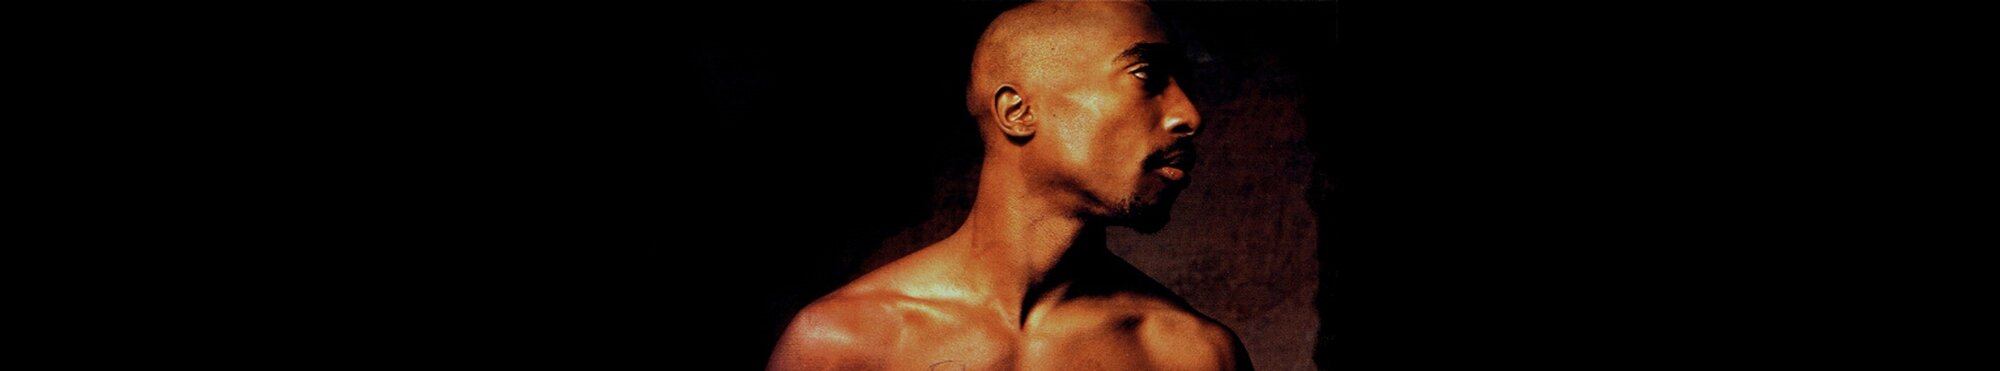 Tupac's background image'